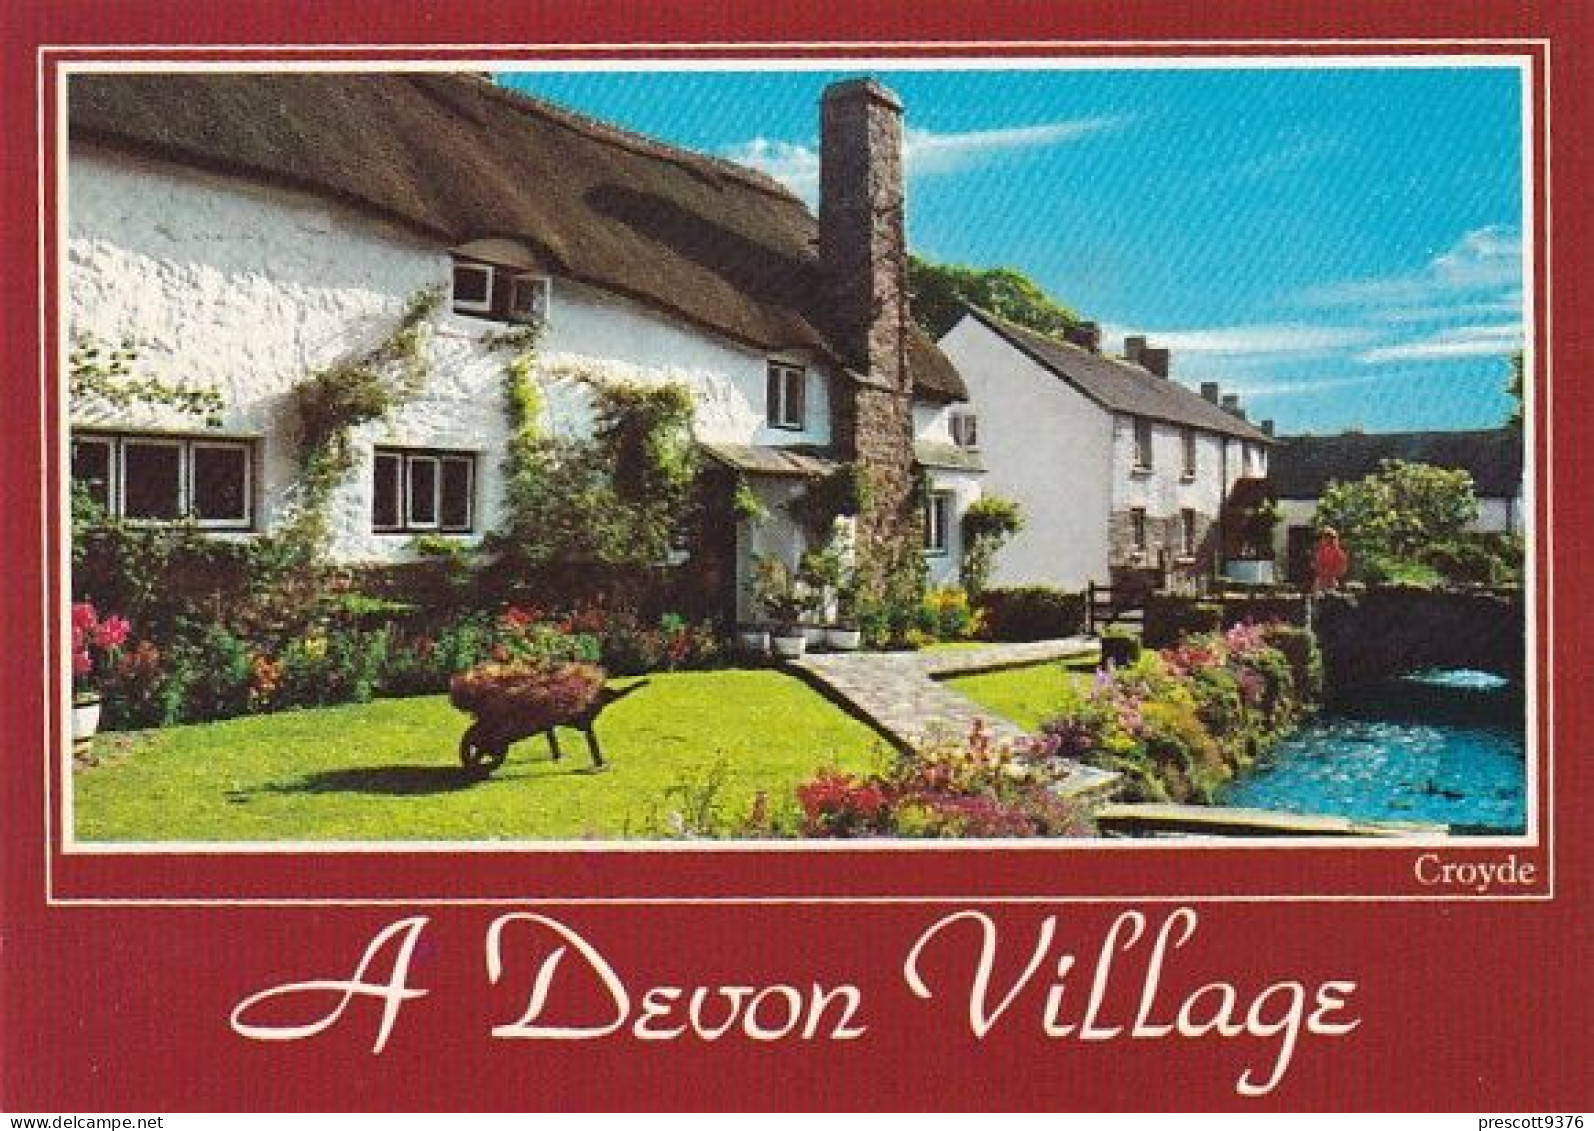 A Devon Village - Devon - Unused Postcard - Dev2 - Plymouth